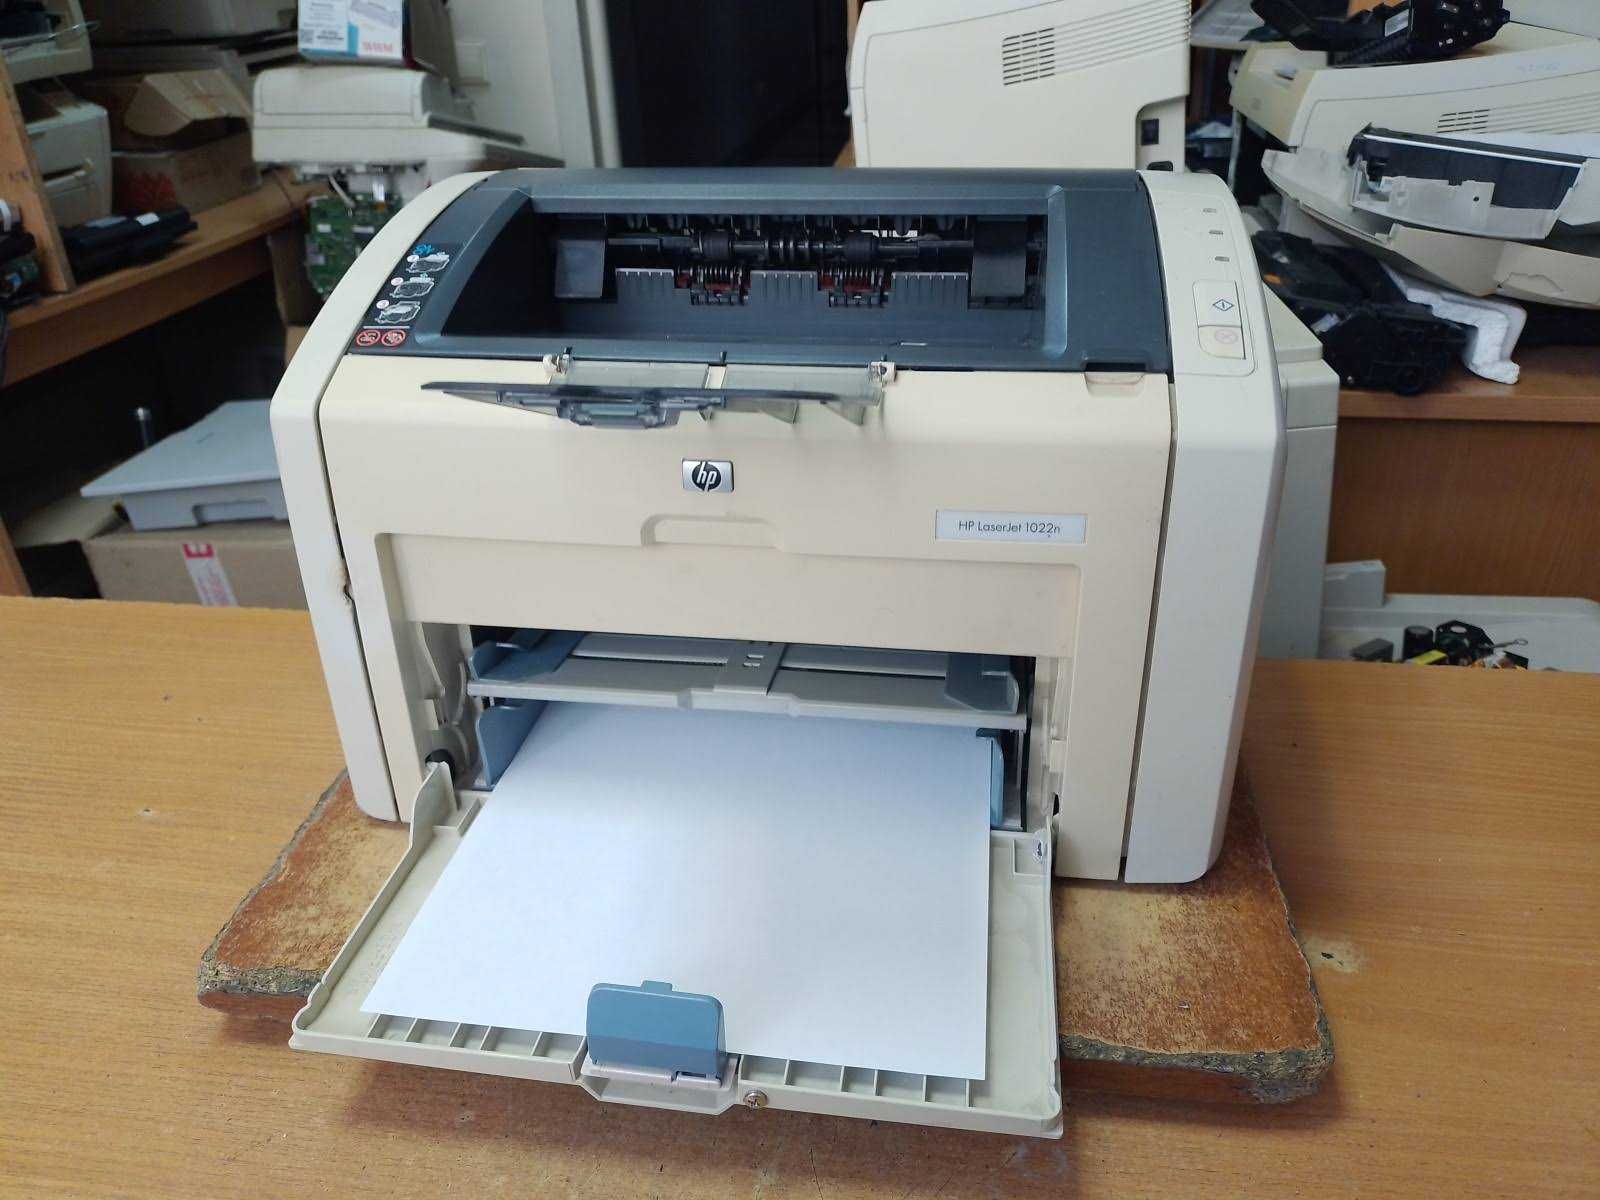 Лазерный принтер HP LaserJet 1022n с сетью, заправлен 100%